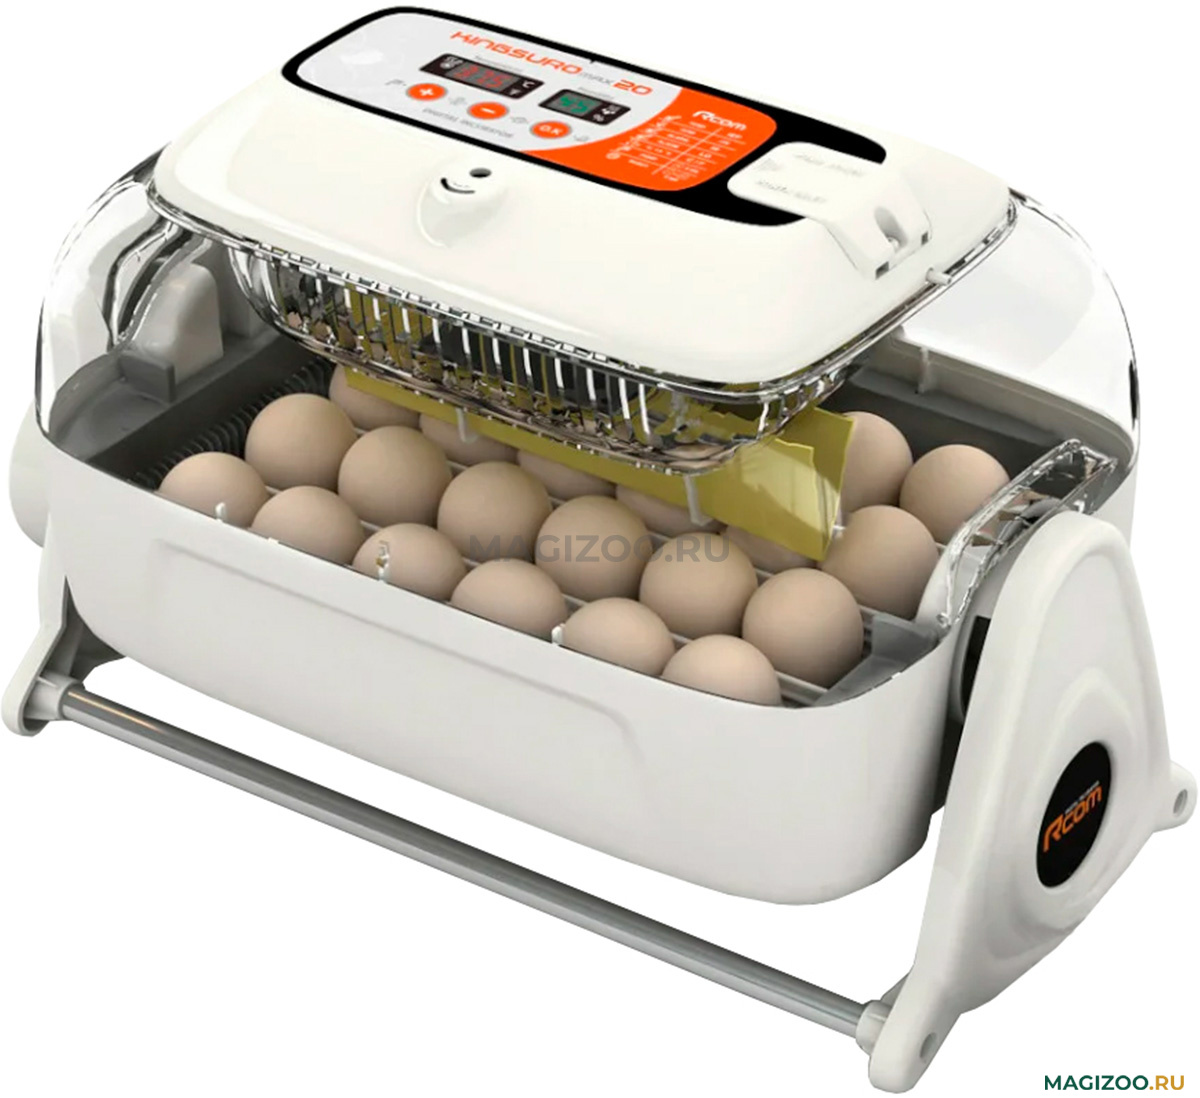 Инкубатор для яиц автоматический блиц купить. Инкубатор RCOM King Suro 20. Инкубатор RCOM 20 Max. Инкубатор корейский r-com Suro 20.